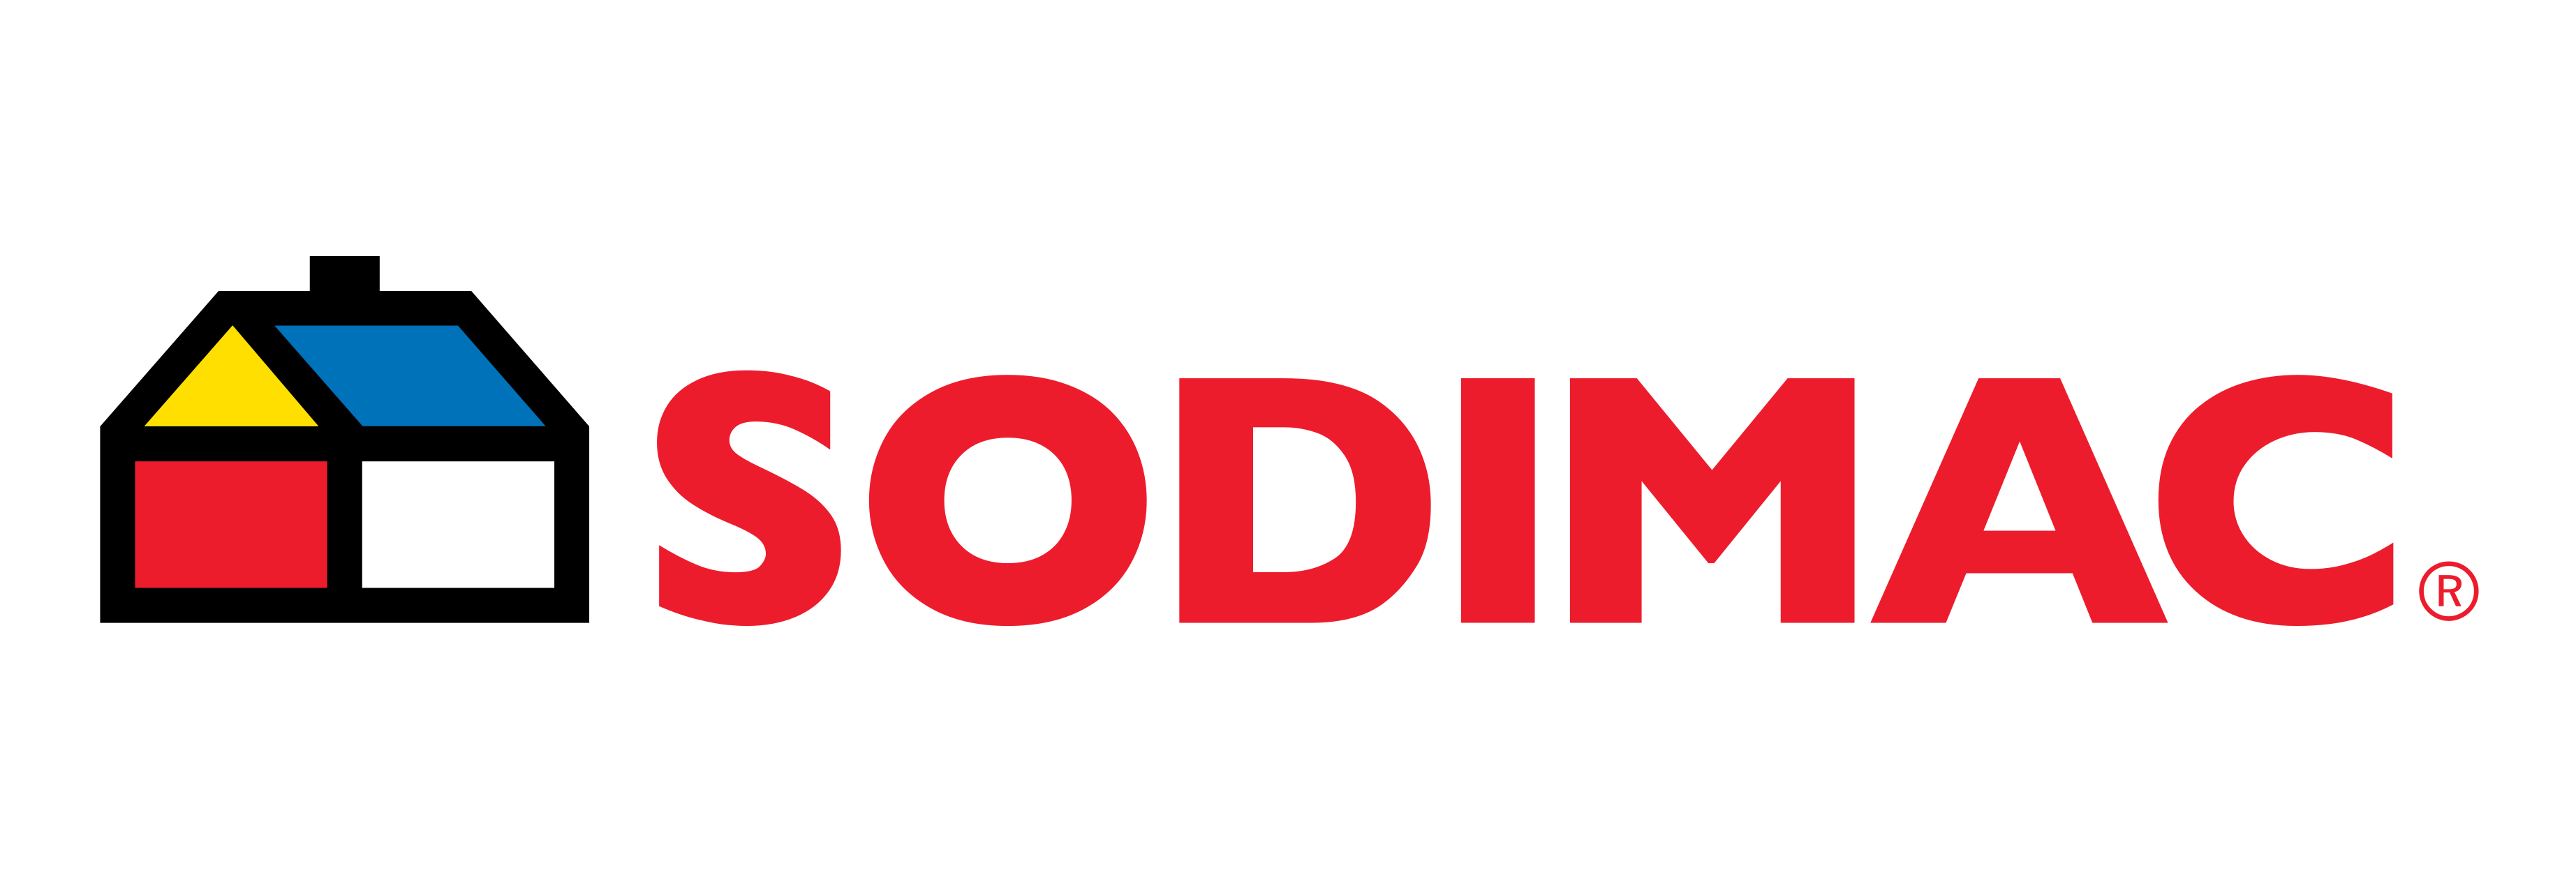 sodimac logo 0